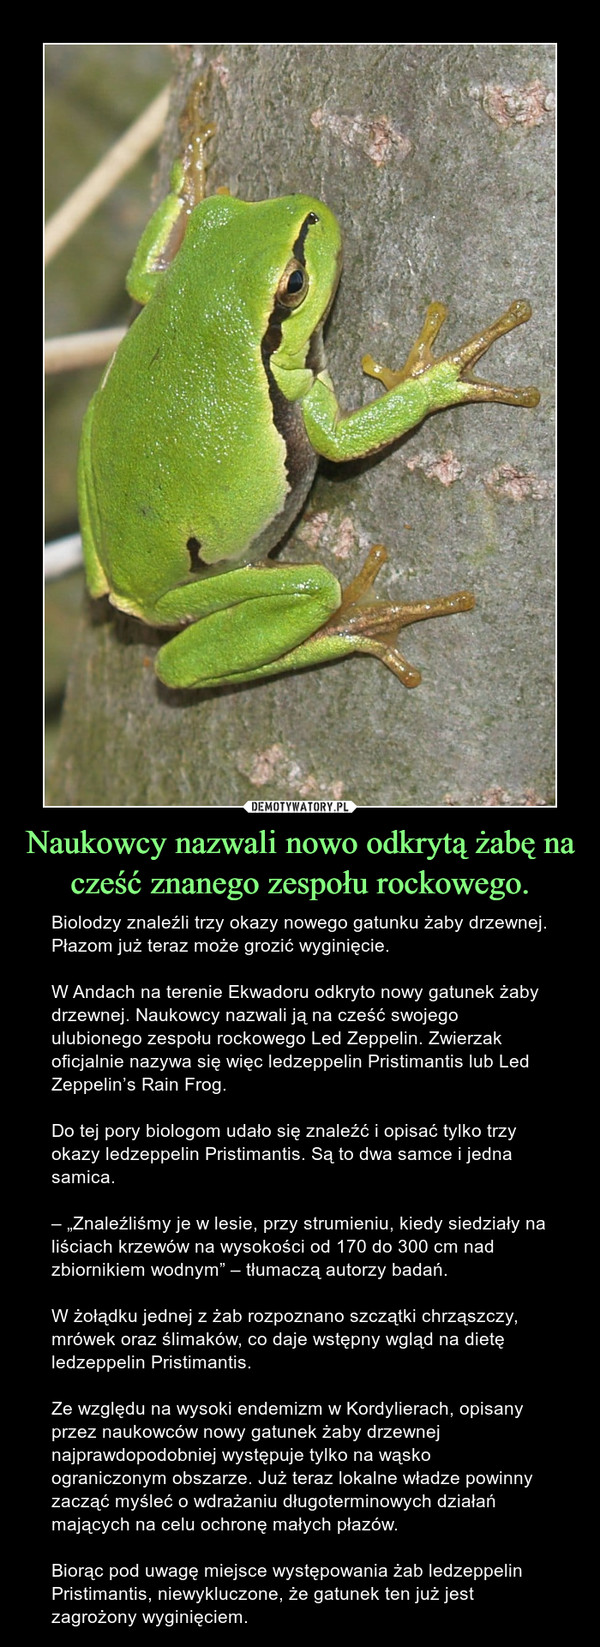 Naukowcy nazwali nowo odkrytą żabę na cześć znanego zespołu rockowego.